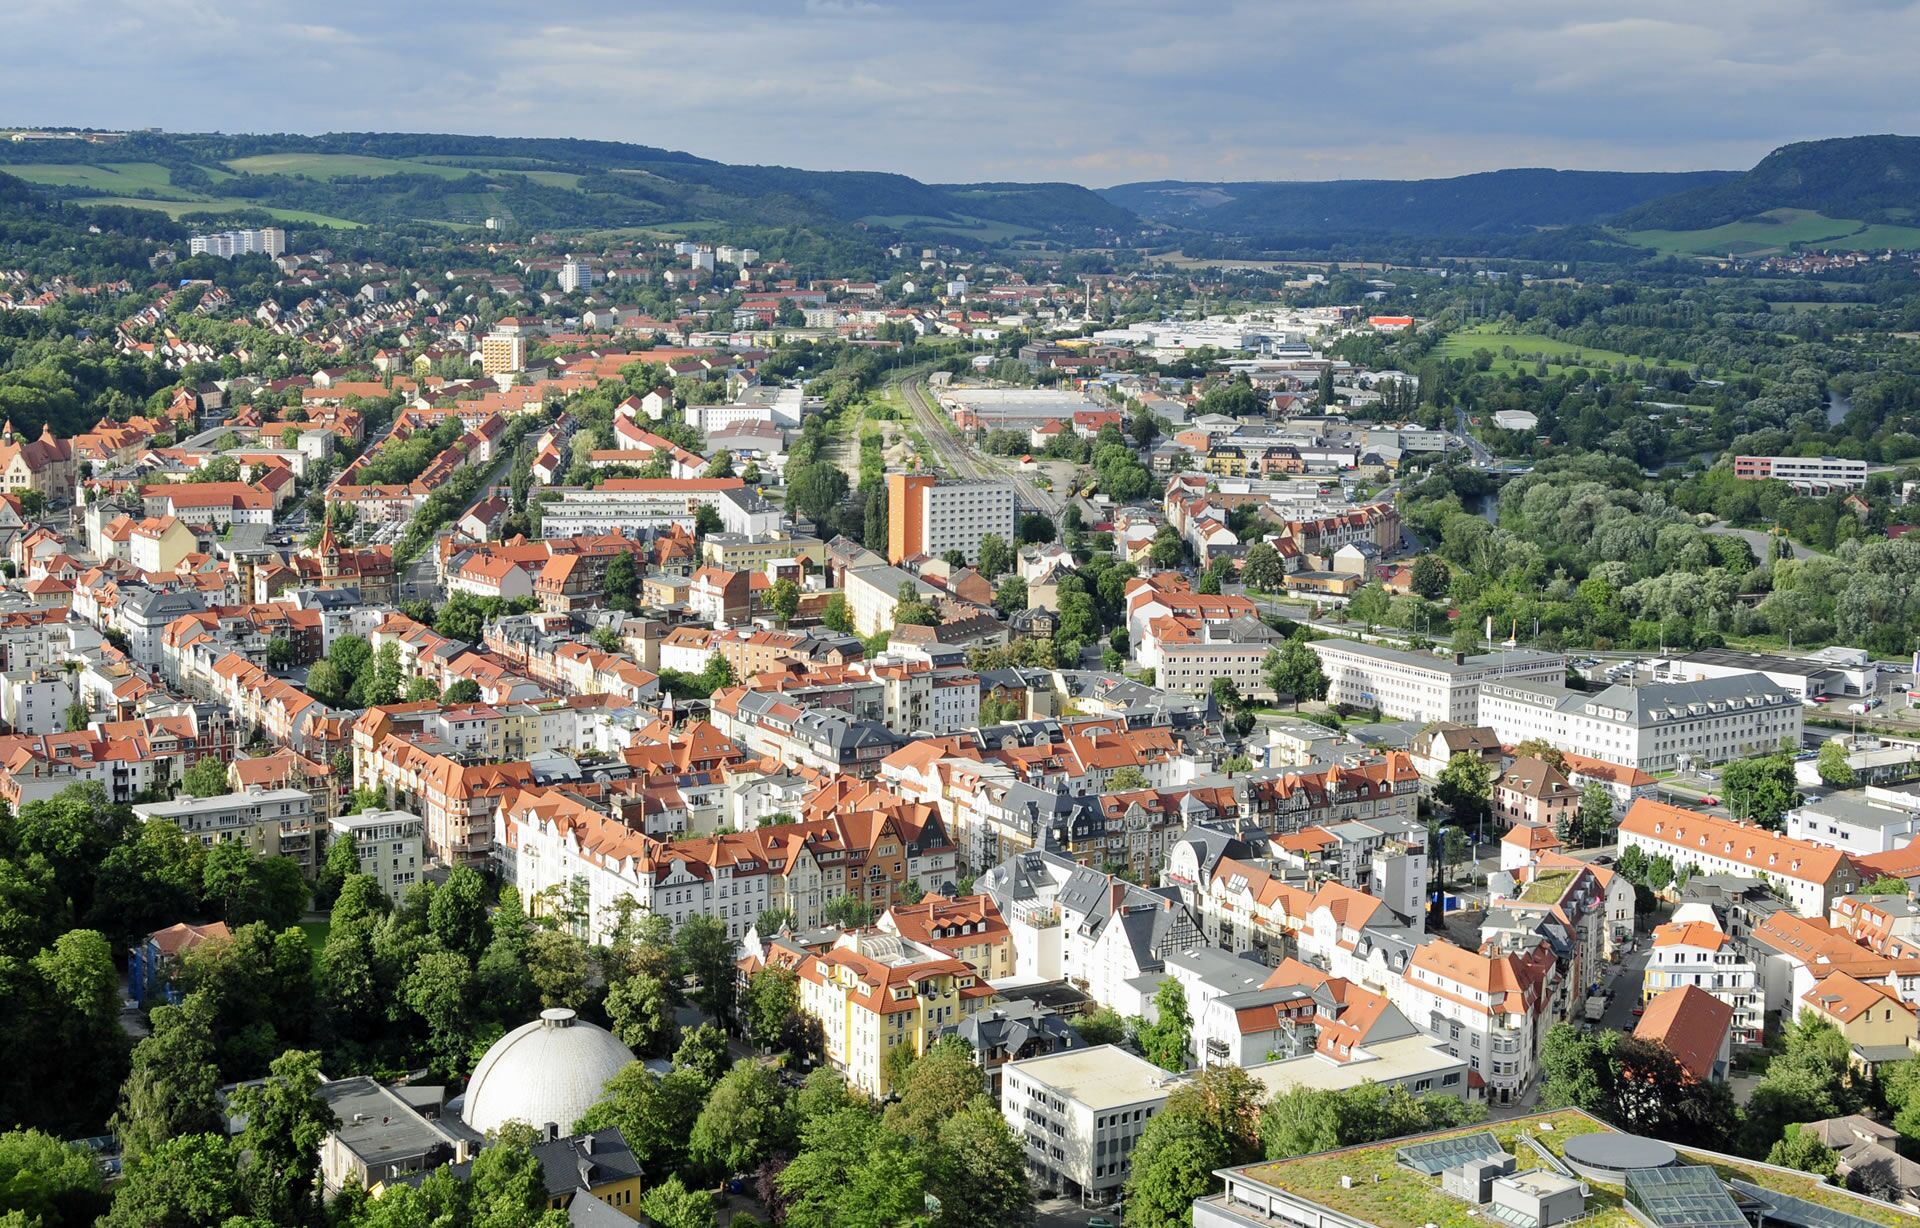 Makler für Immobilienbewertung & Verkauf in Jena & Umgebung